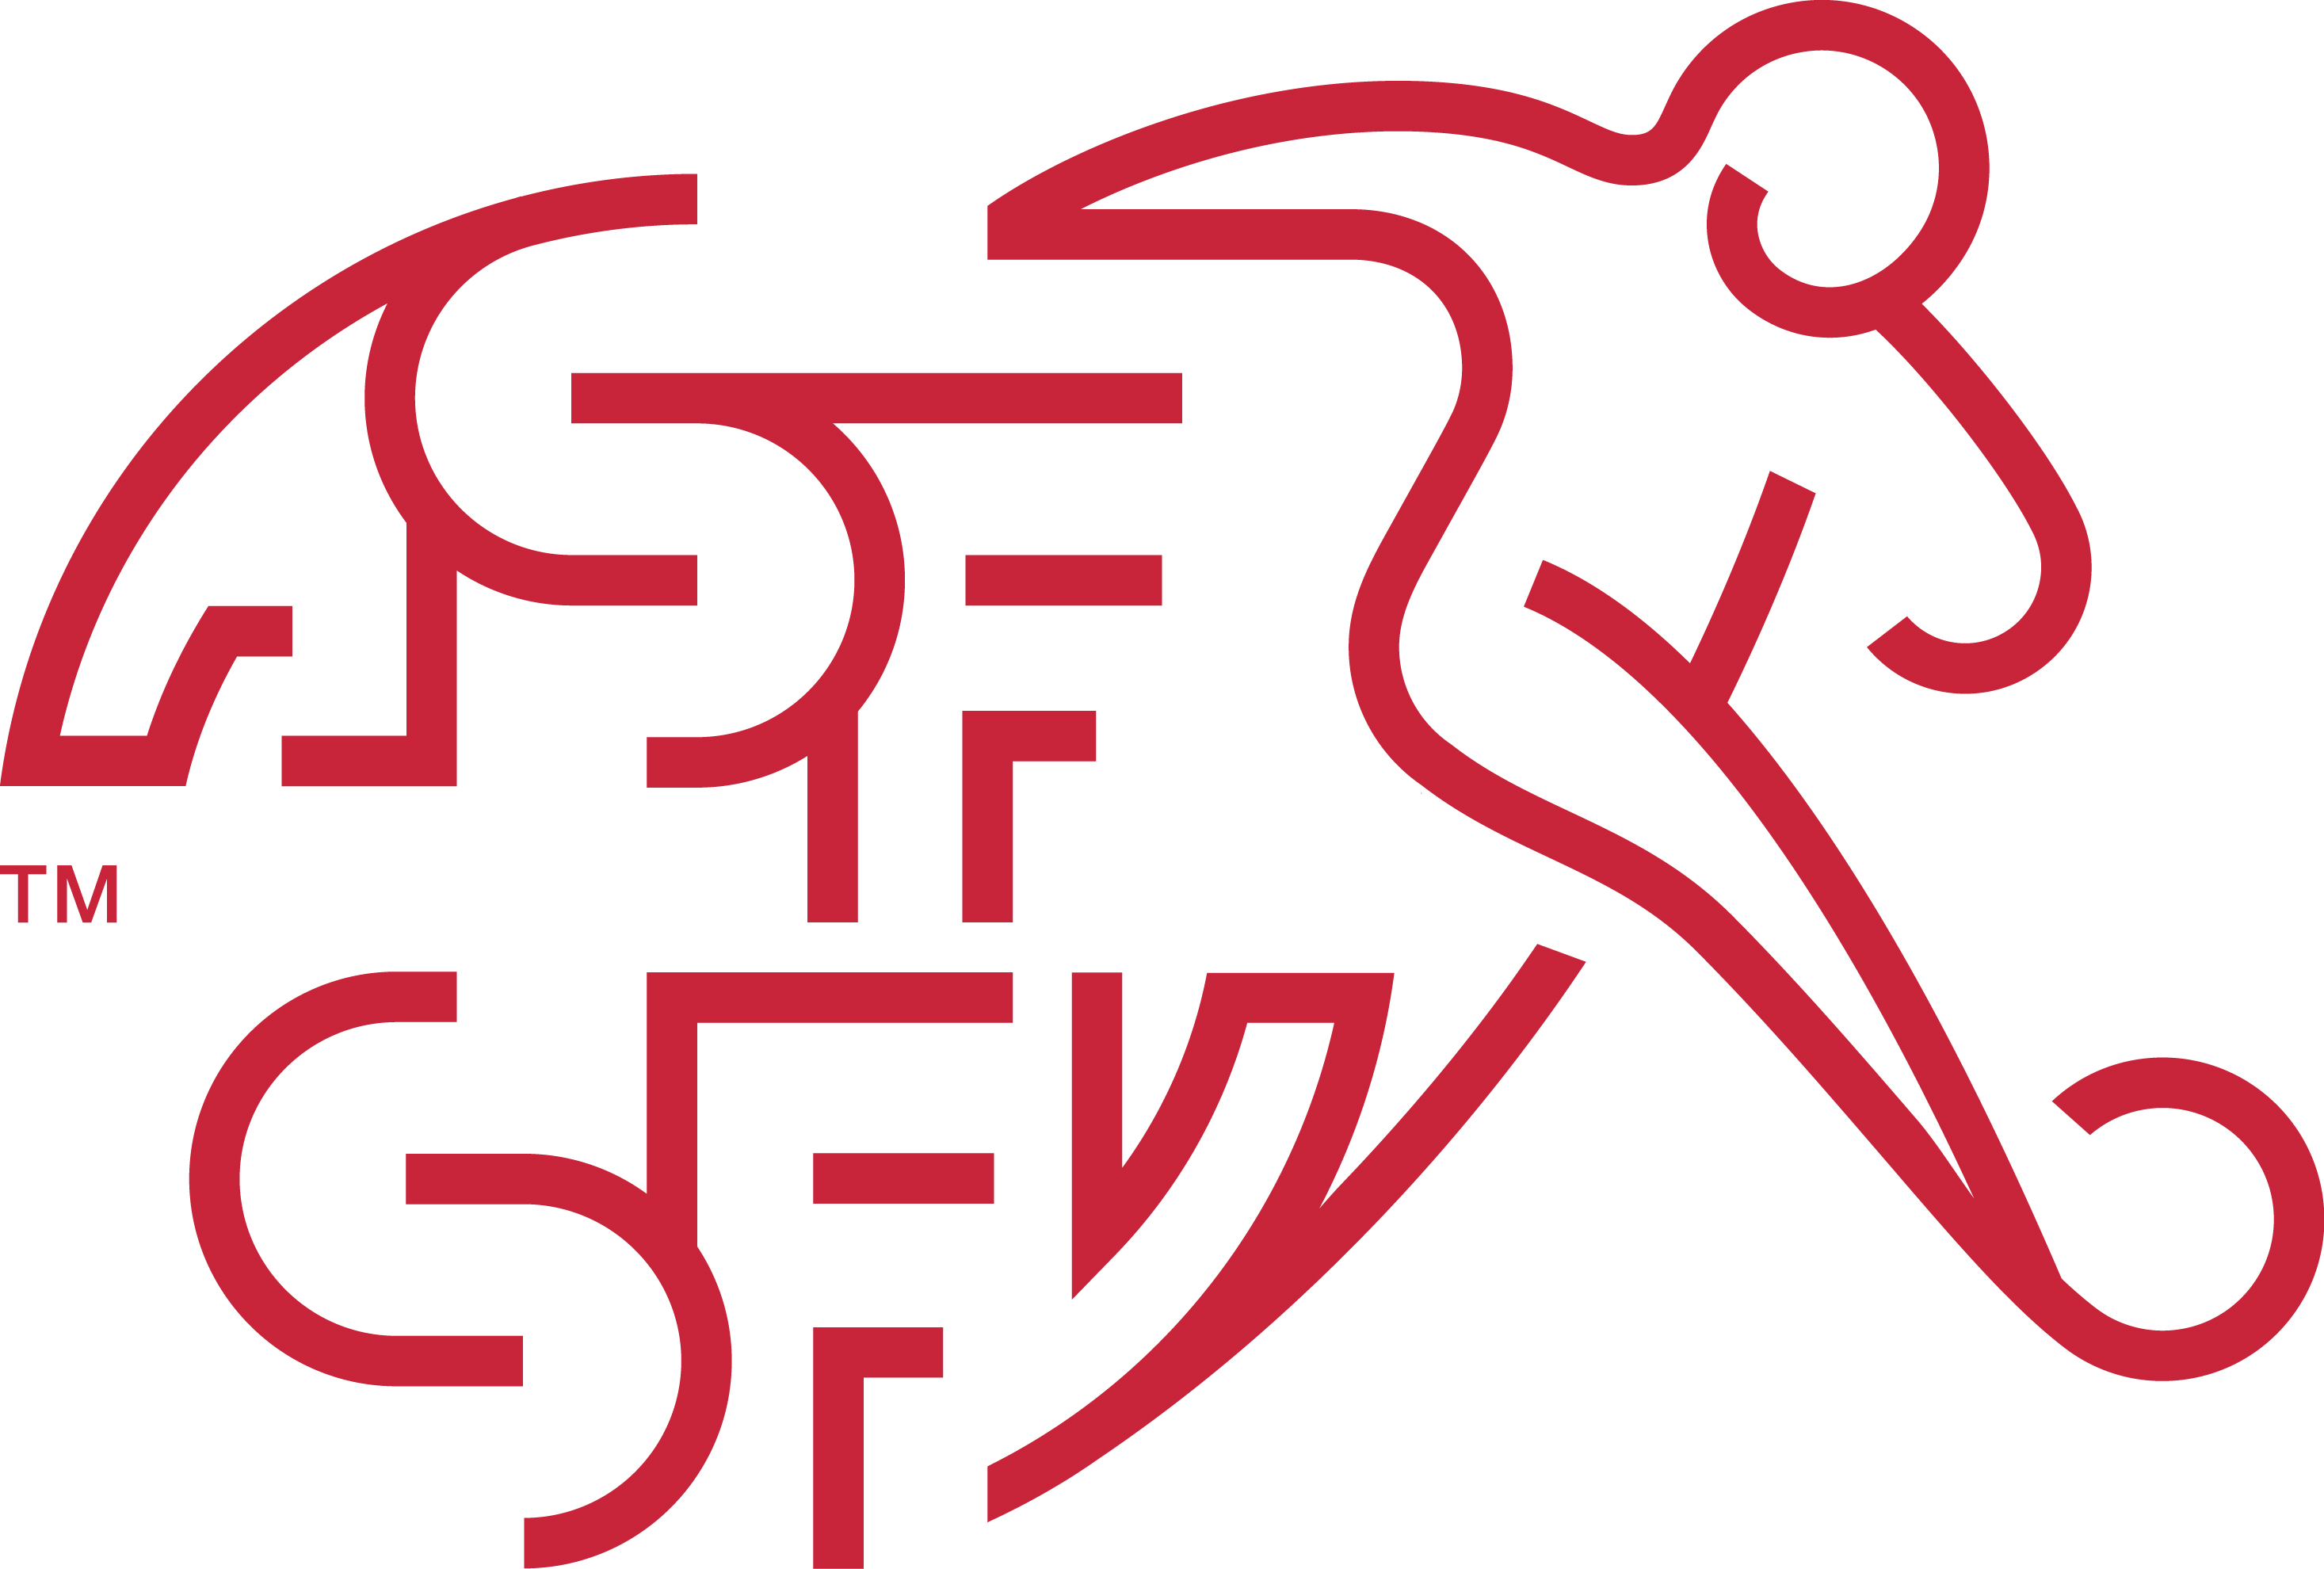 Swiss Football Association U0026 Switzerland National Football Team Logo [Pdf] - Swiss Football Team, Transparent background PNG HD thumbnail